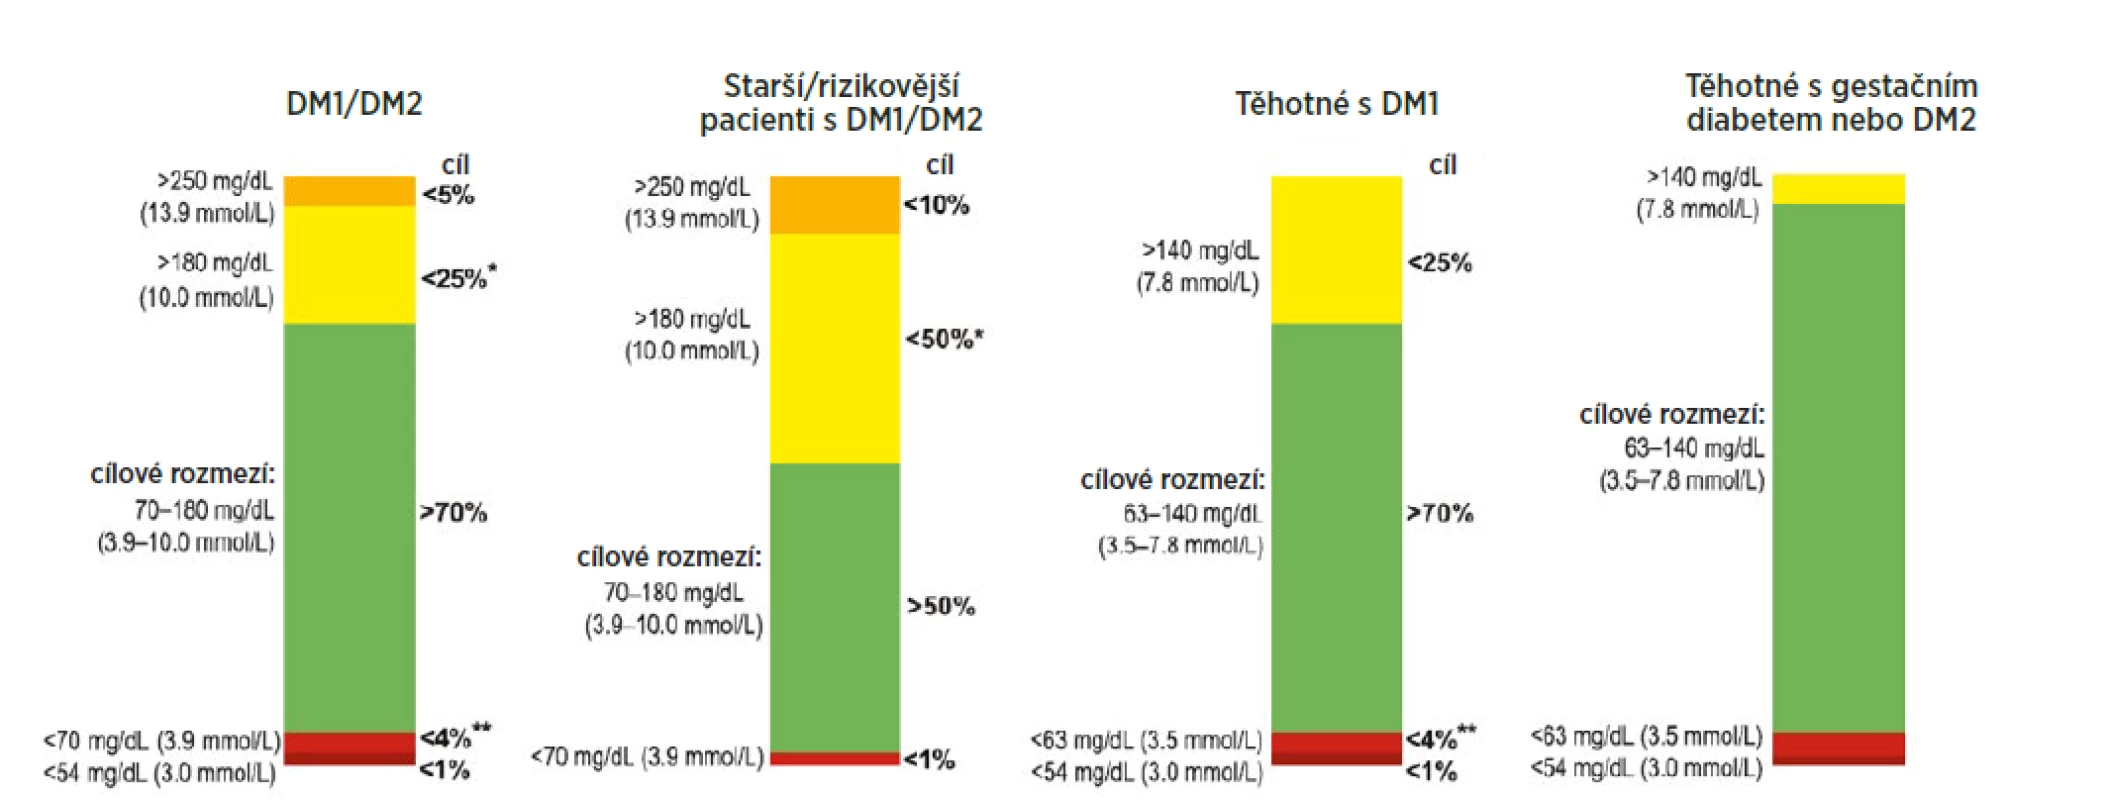 Metrika kontinuálního monitorování glukózy a doporučené cílové hodnoty pro různé skupiny pacientů